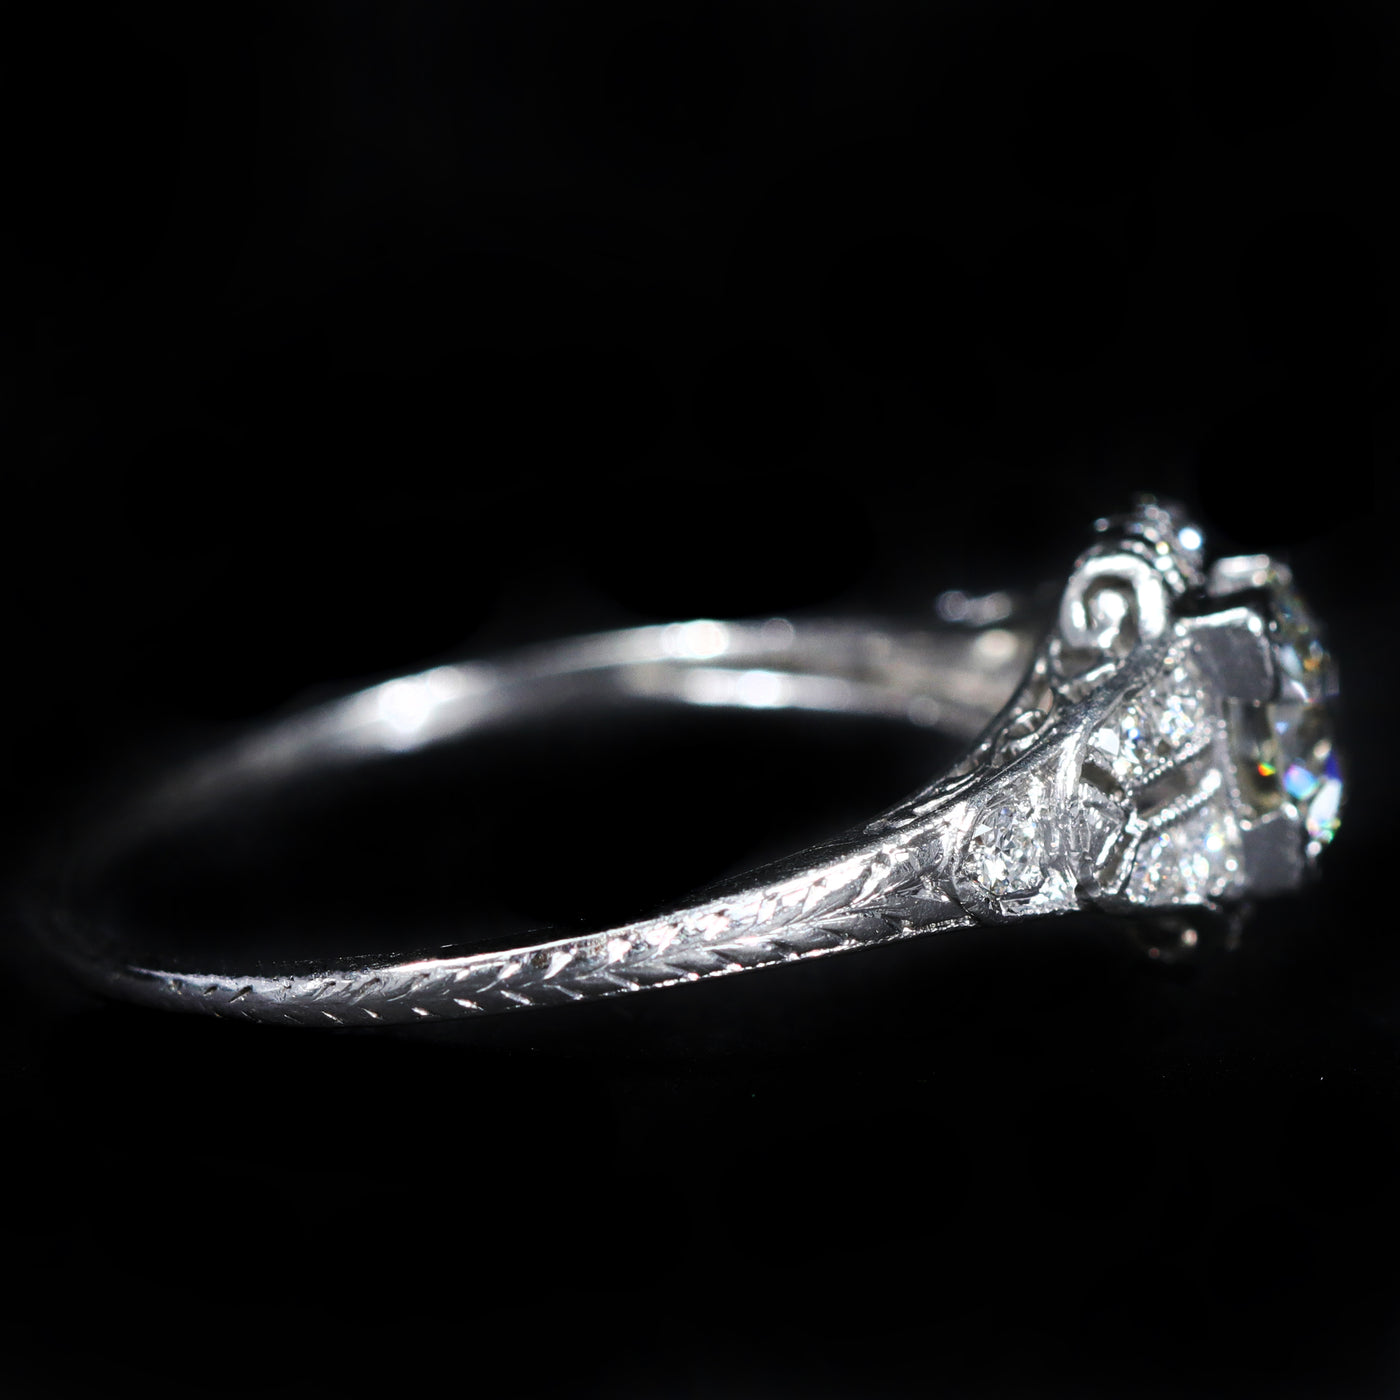 Art Deco Platinum 0.78 Carat Old European Cut Diamond Engagement Ring